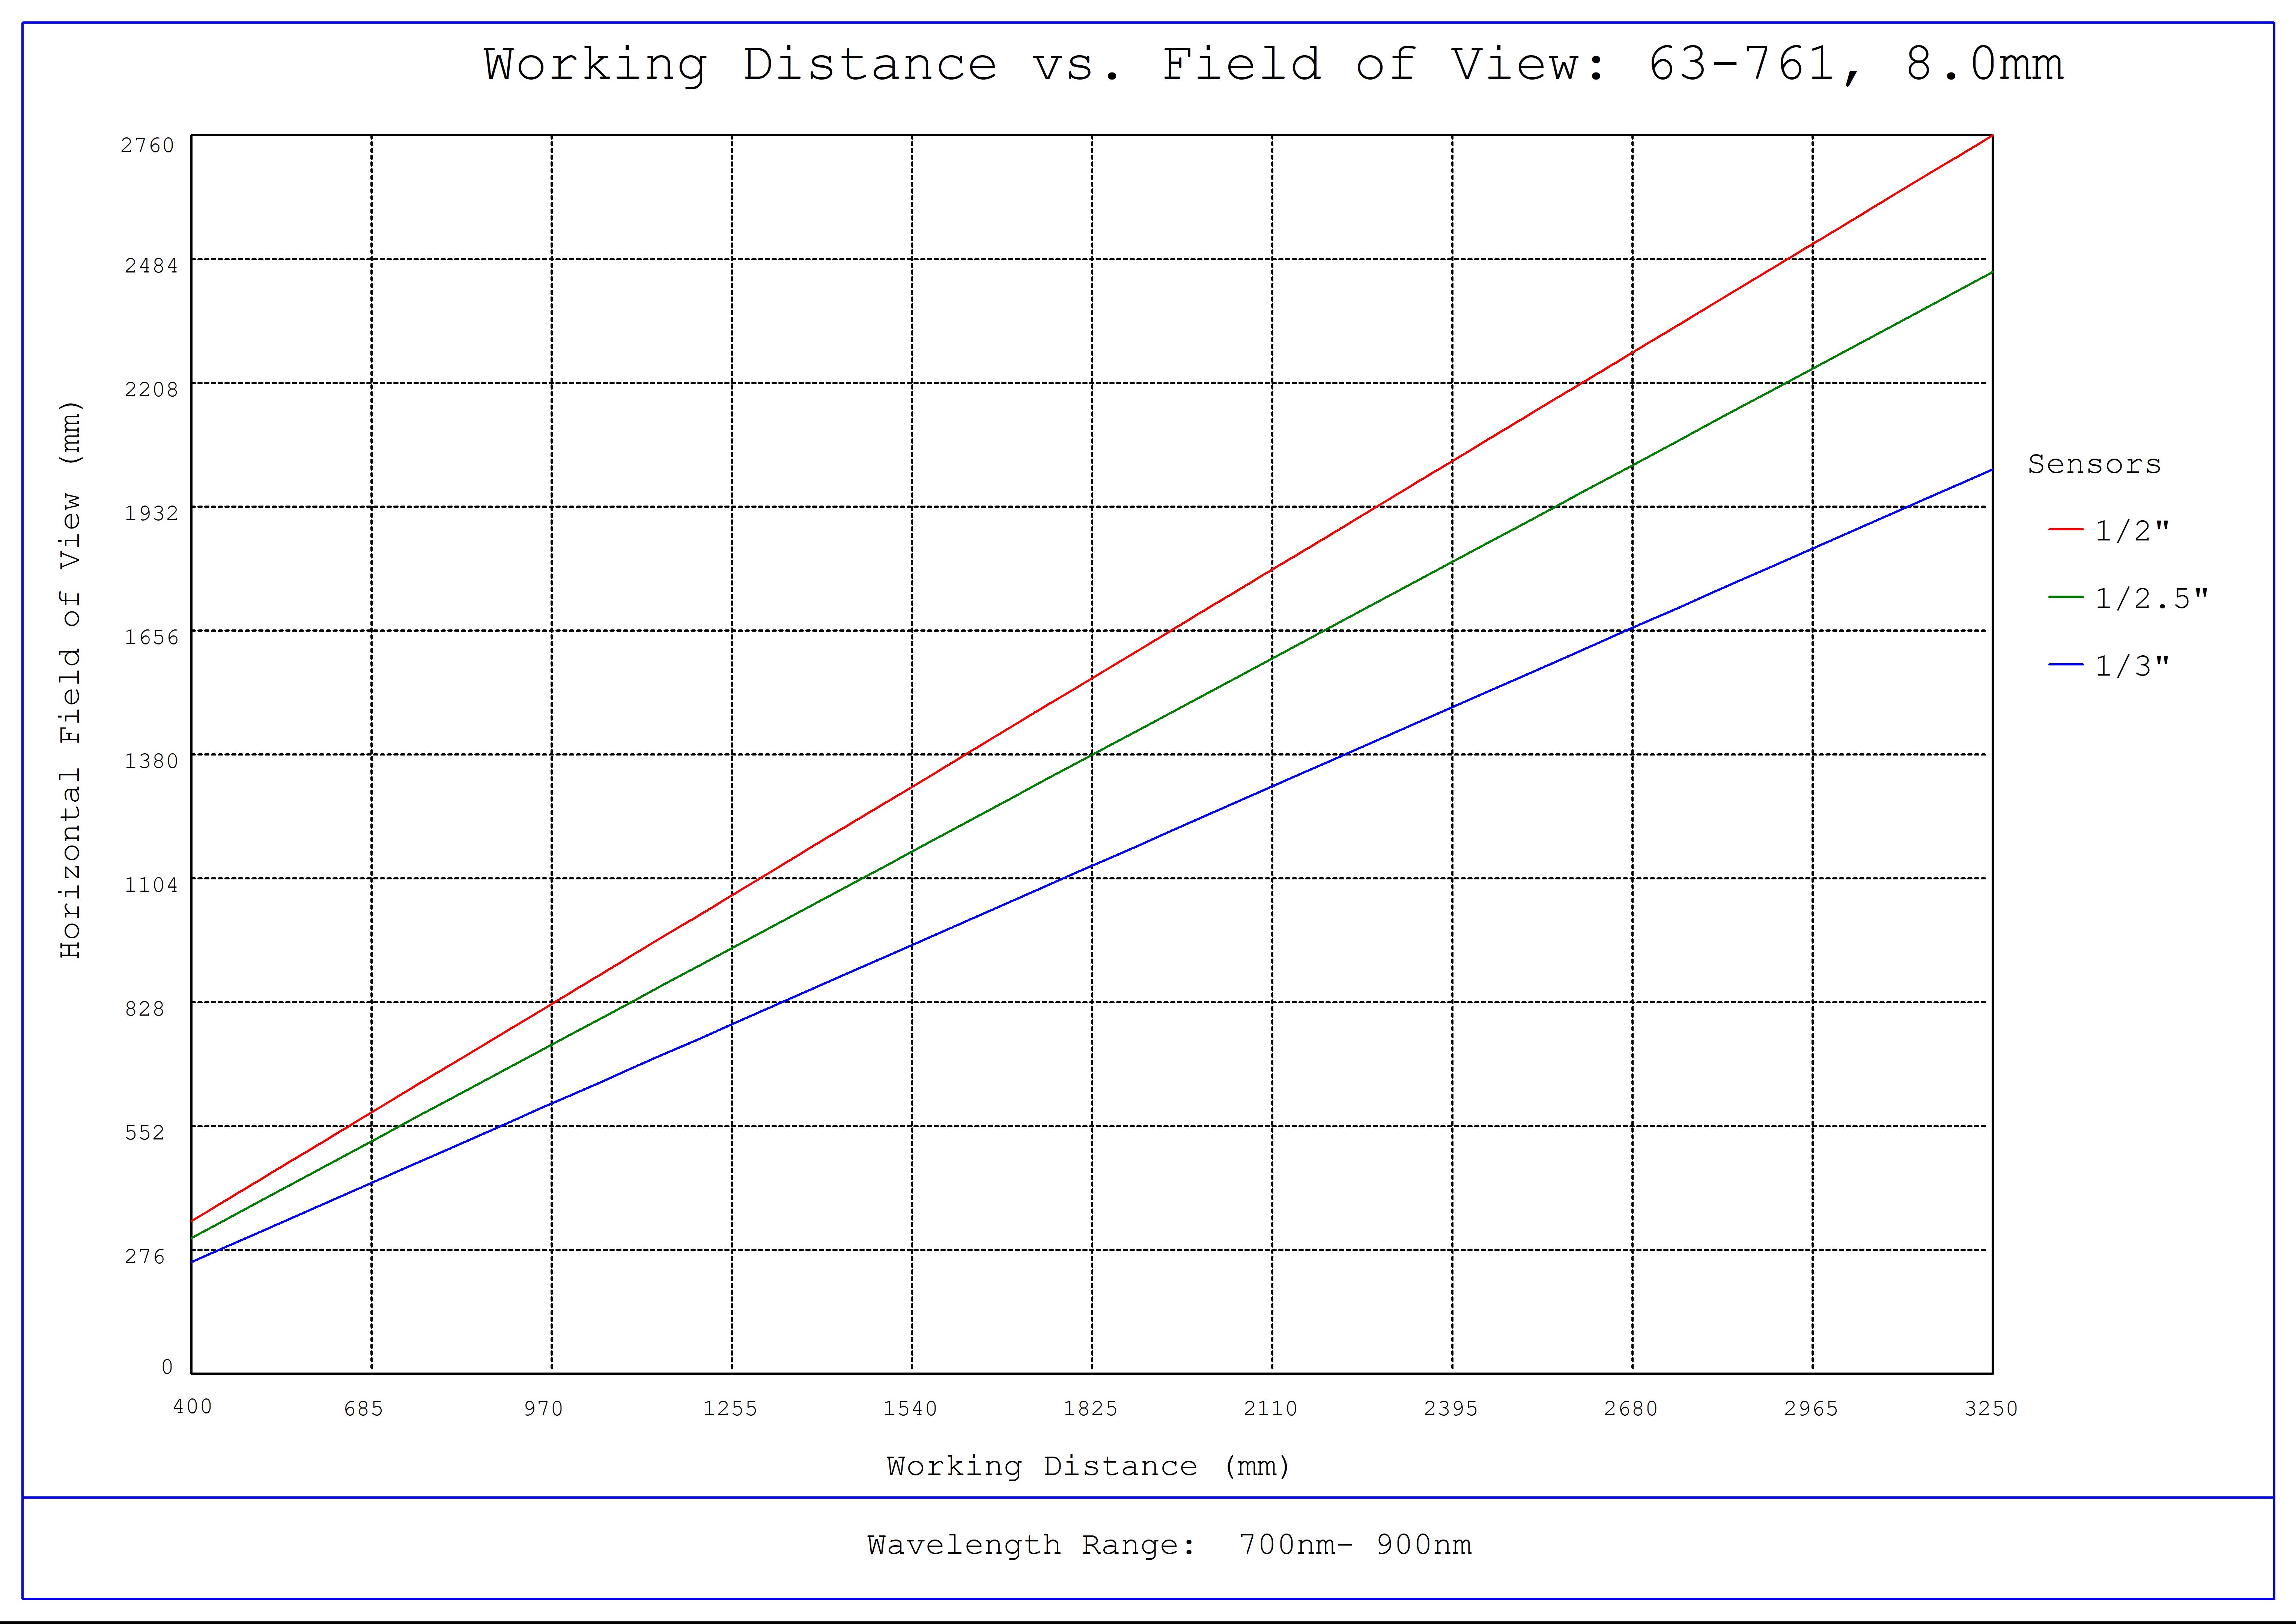 #63-761, f/2.5, NIR, 8.0mm HEO Series M12 Lens, Working Distance versus Field of View Plot